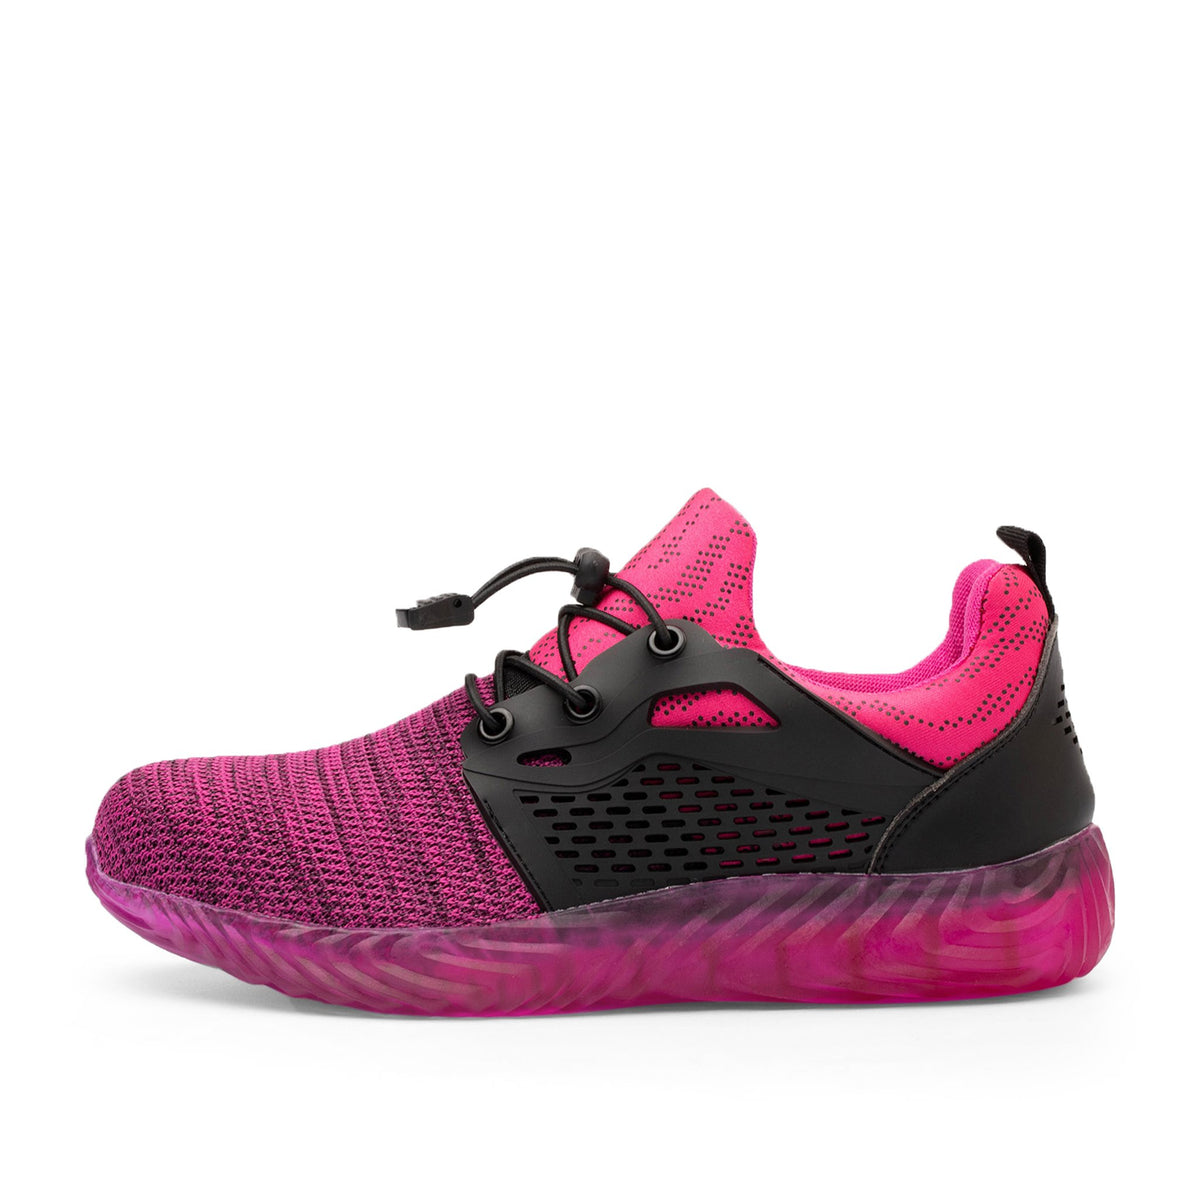 Ryder 1.5 Pink - Indestructible Shoes